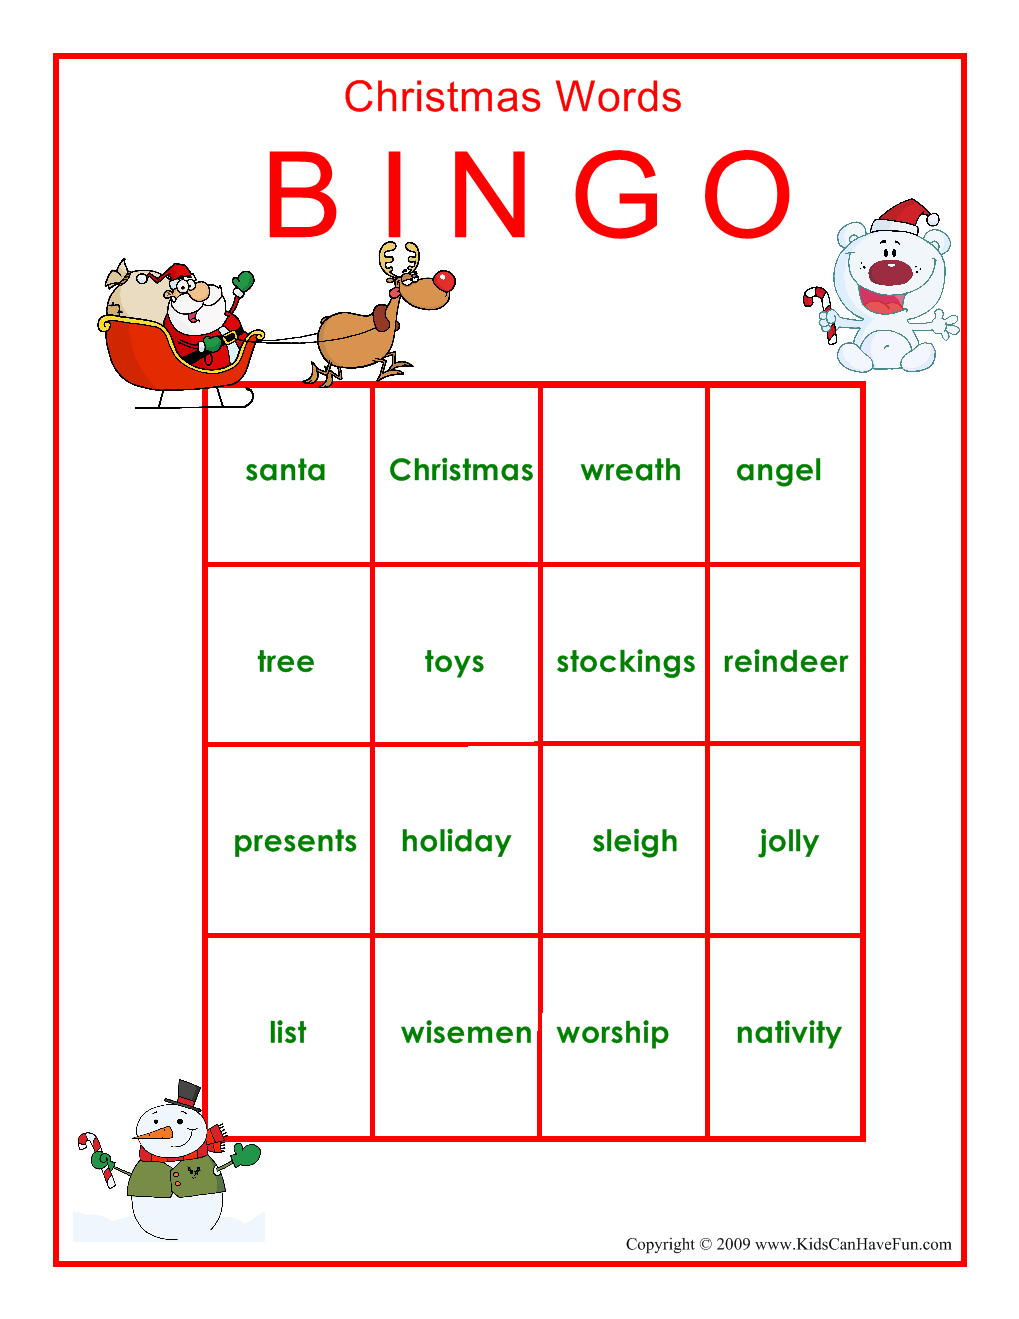 free-printable-christmas-word-bingo-cards-printable-bingo-cards